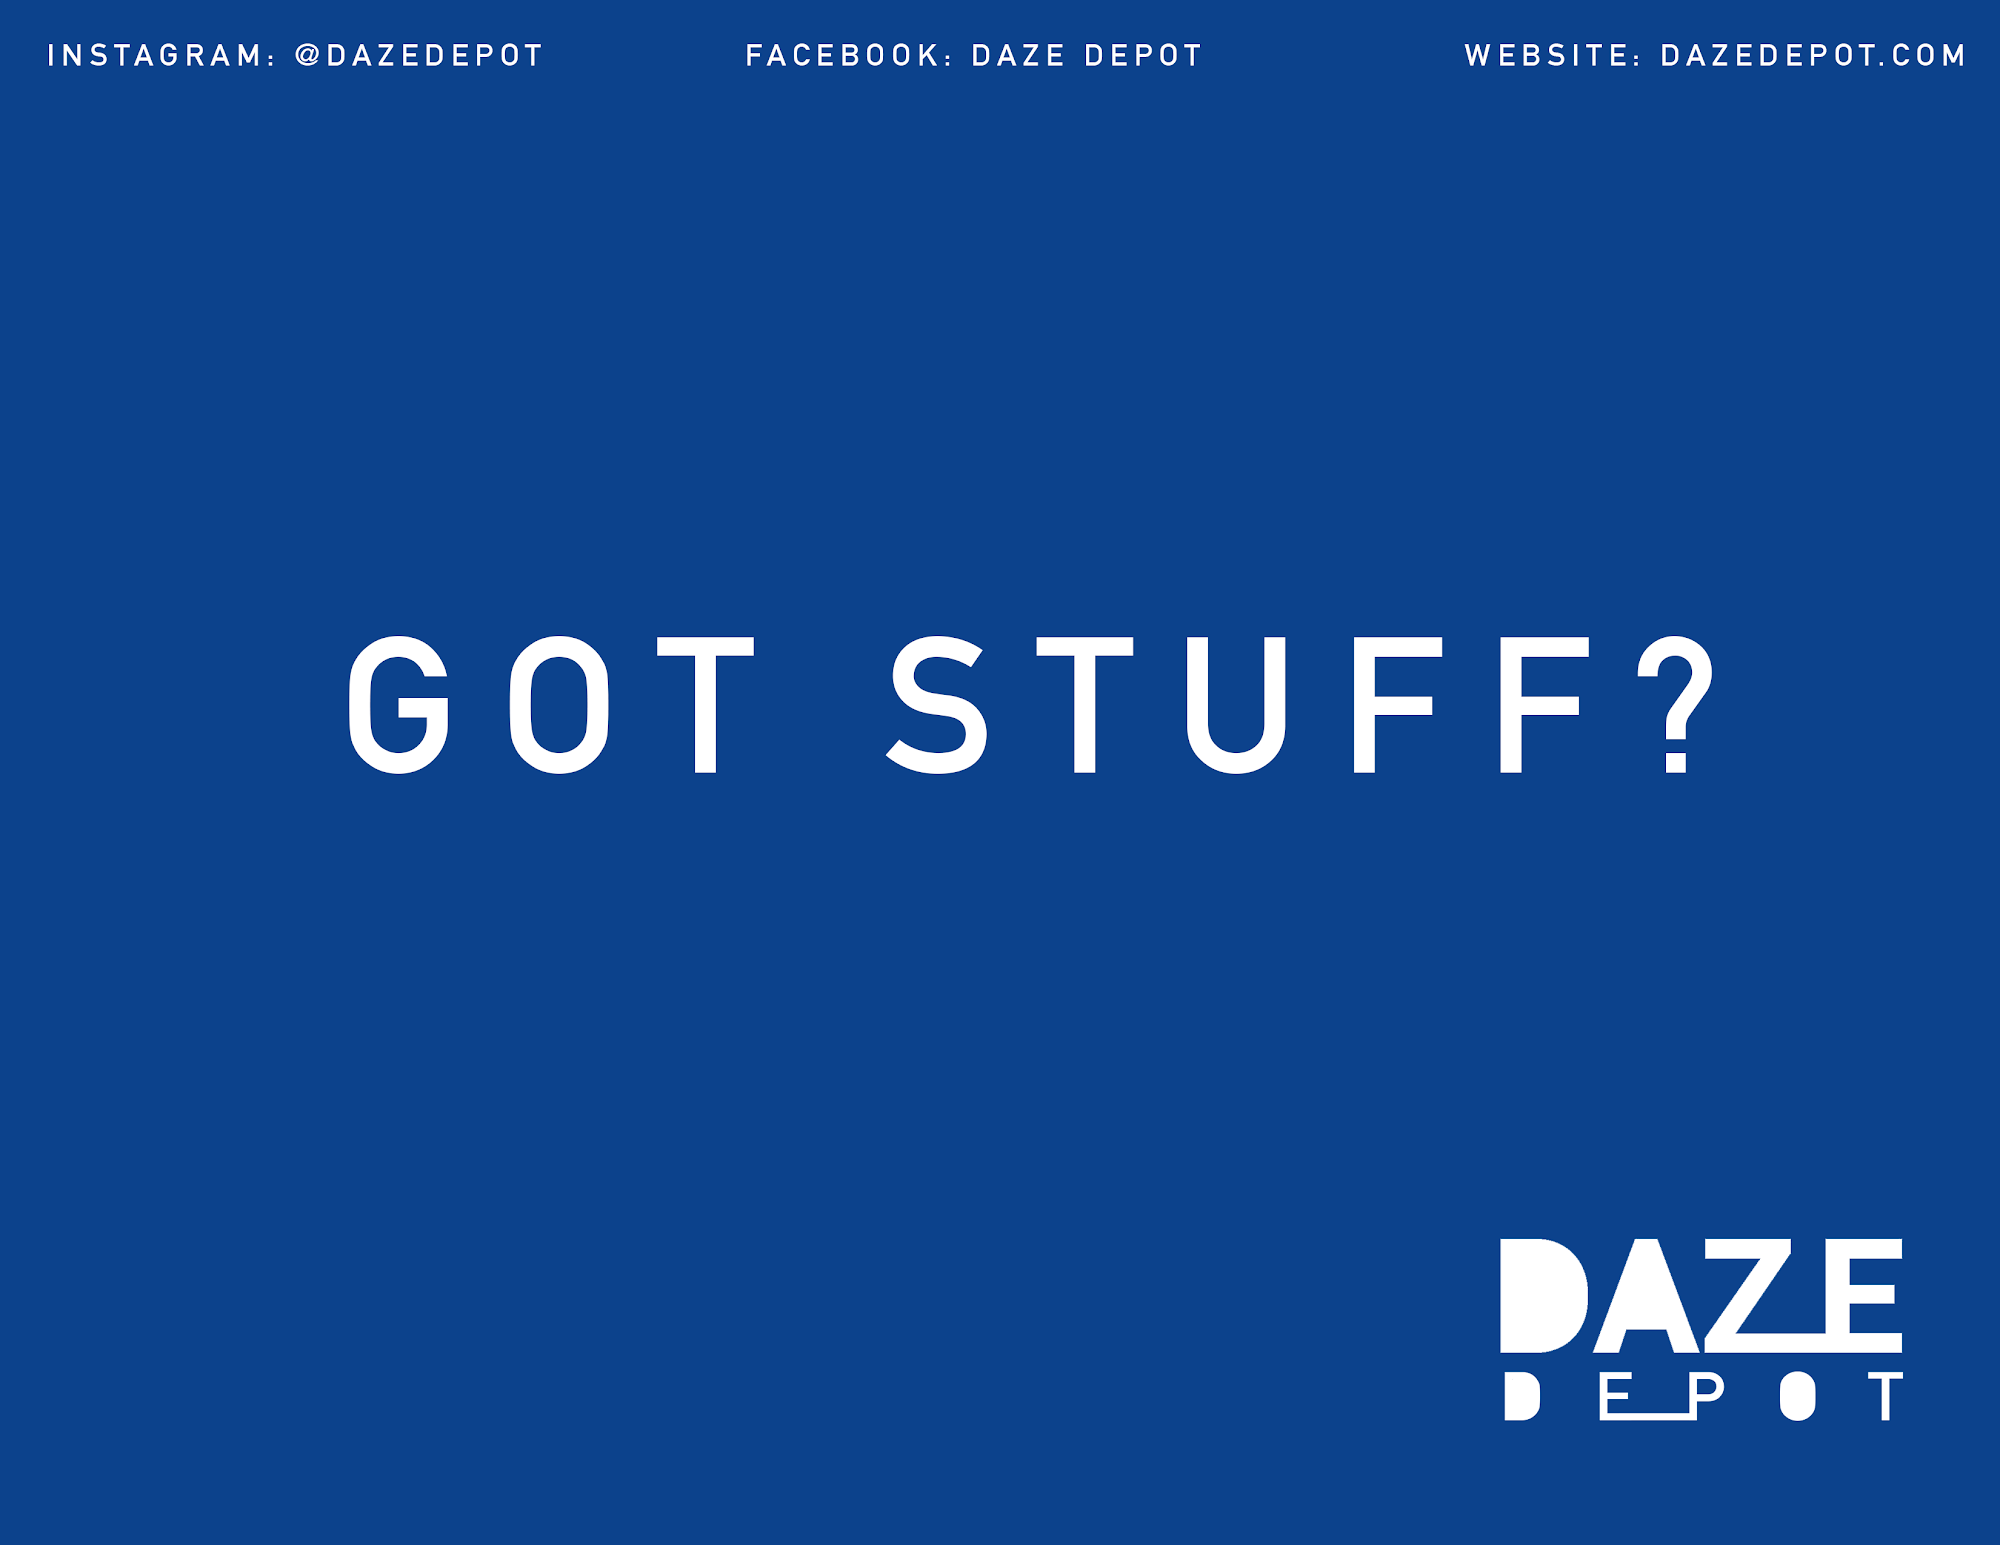 Daze Depot LLC